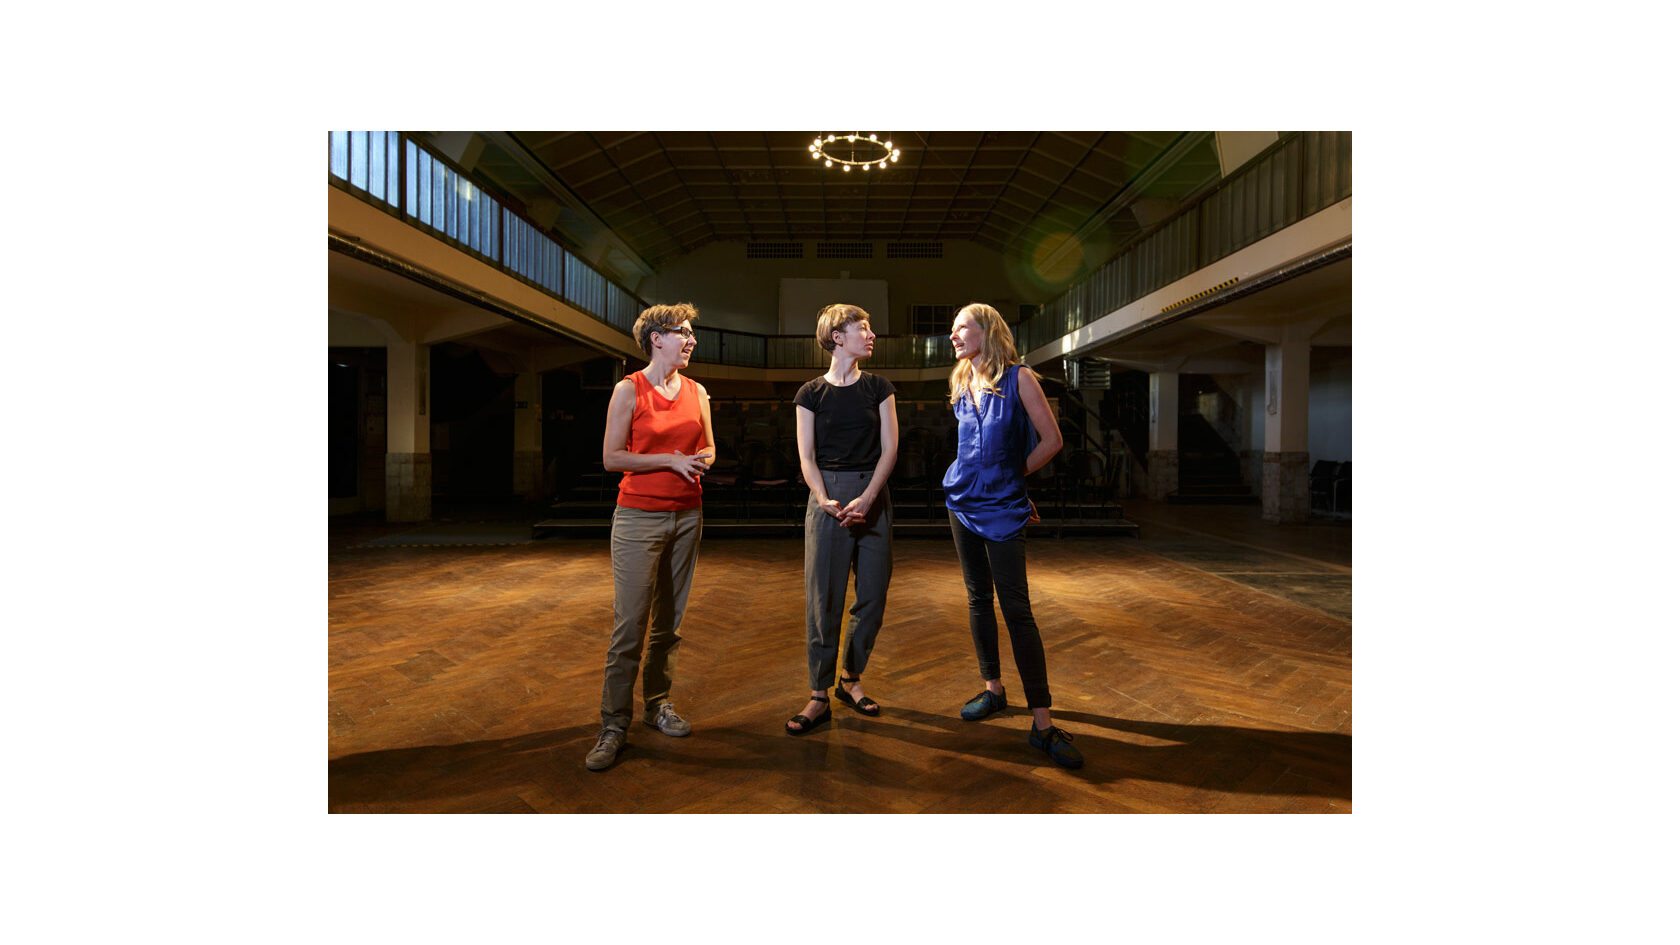 Portraitfoto der Initiatorinnen des Projekts "Polylog Dresden", Barbara Lubich, Anna Till sowie Bettina Lehmann. Sie stehen im Ballsaal des Pieschener Zentralwerks.